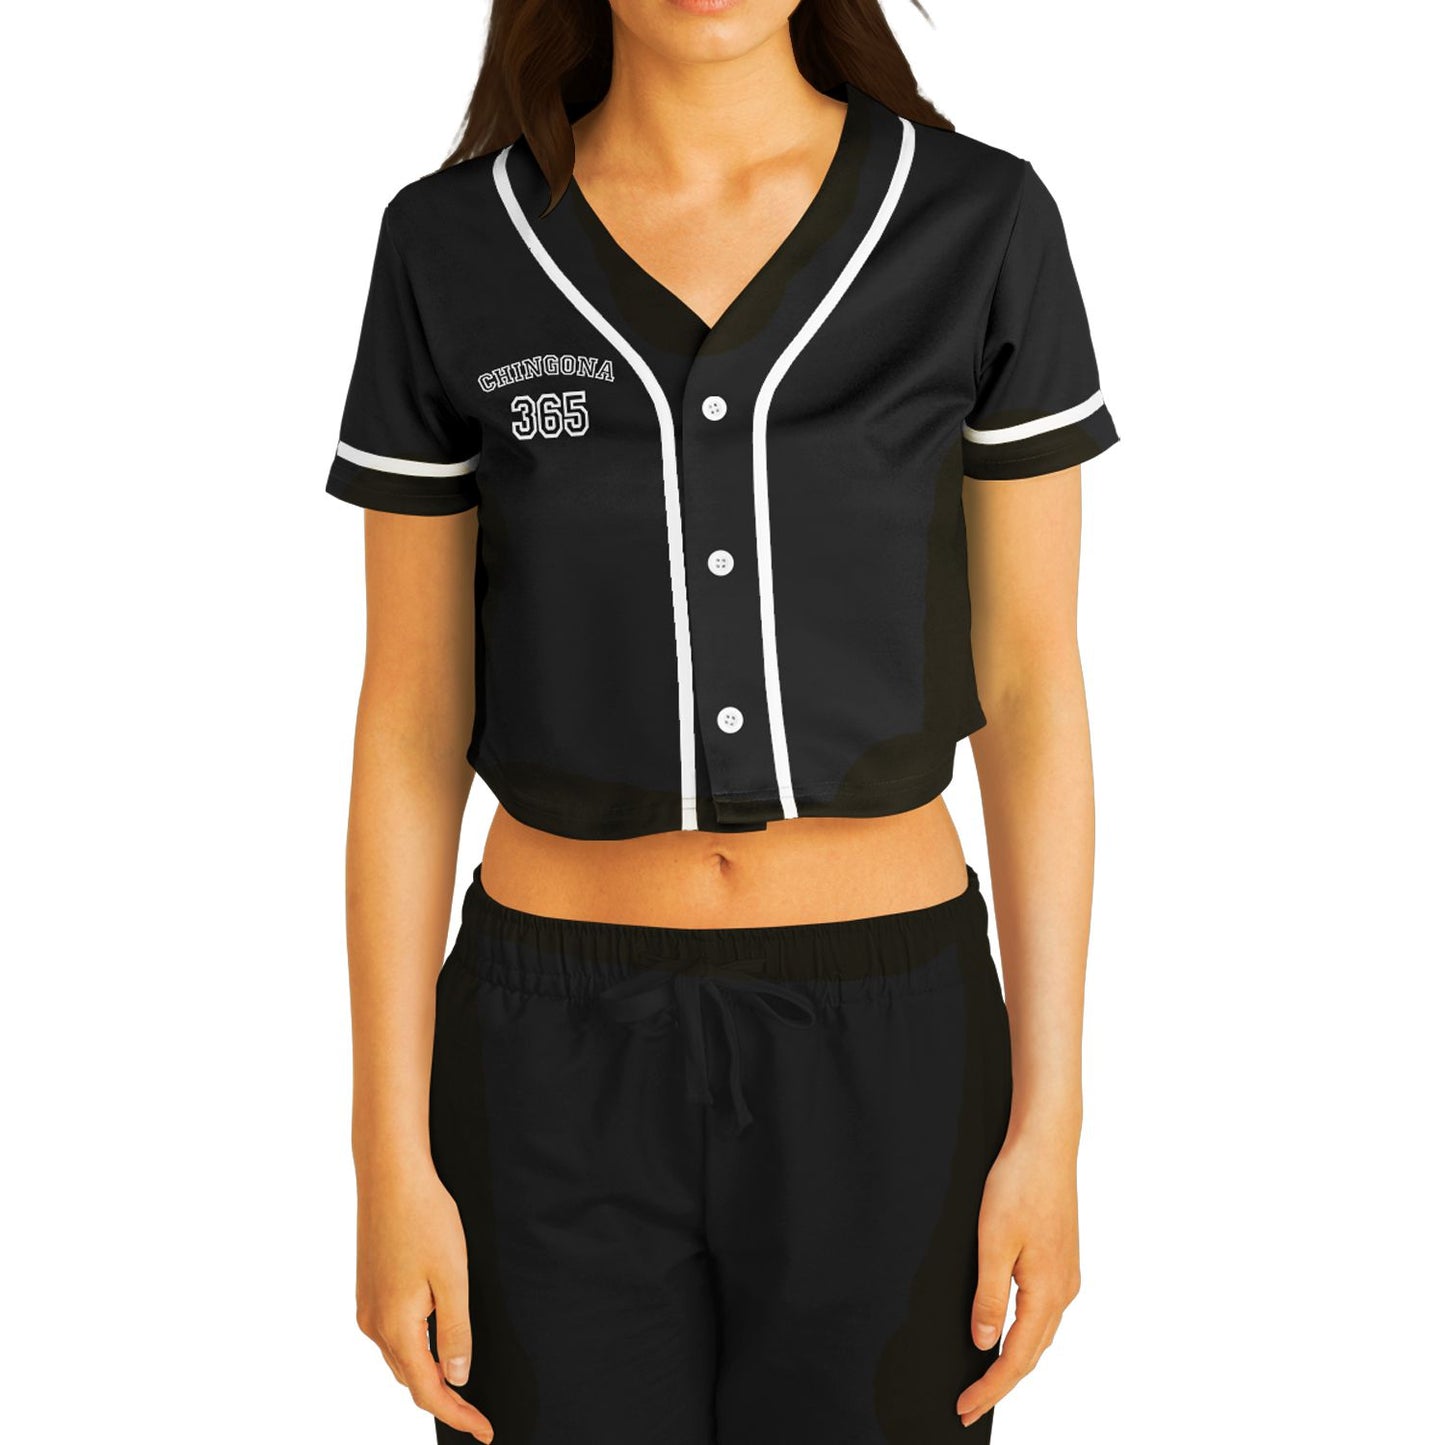 Chingona 365 (Black) - Cropped Baseball Jersey